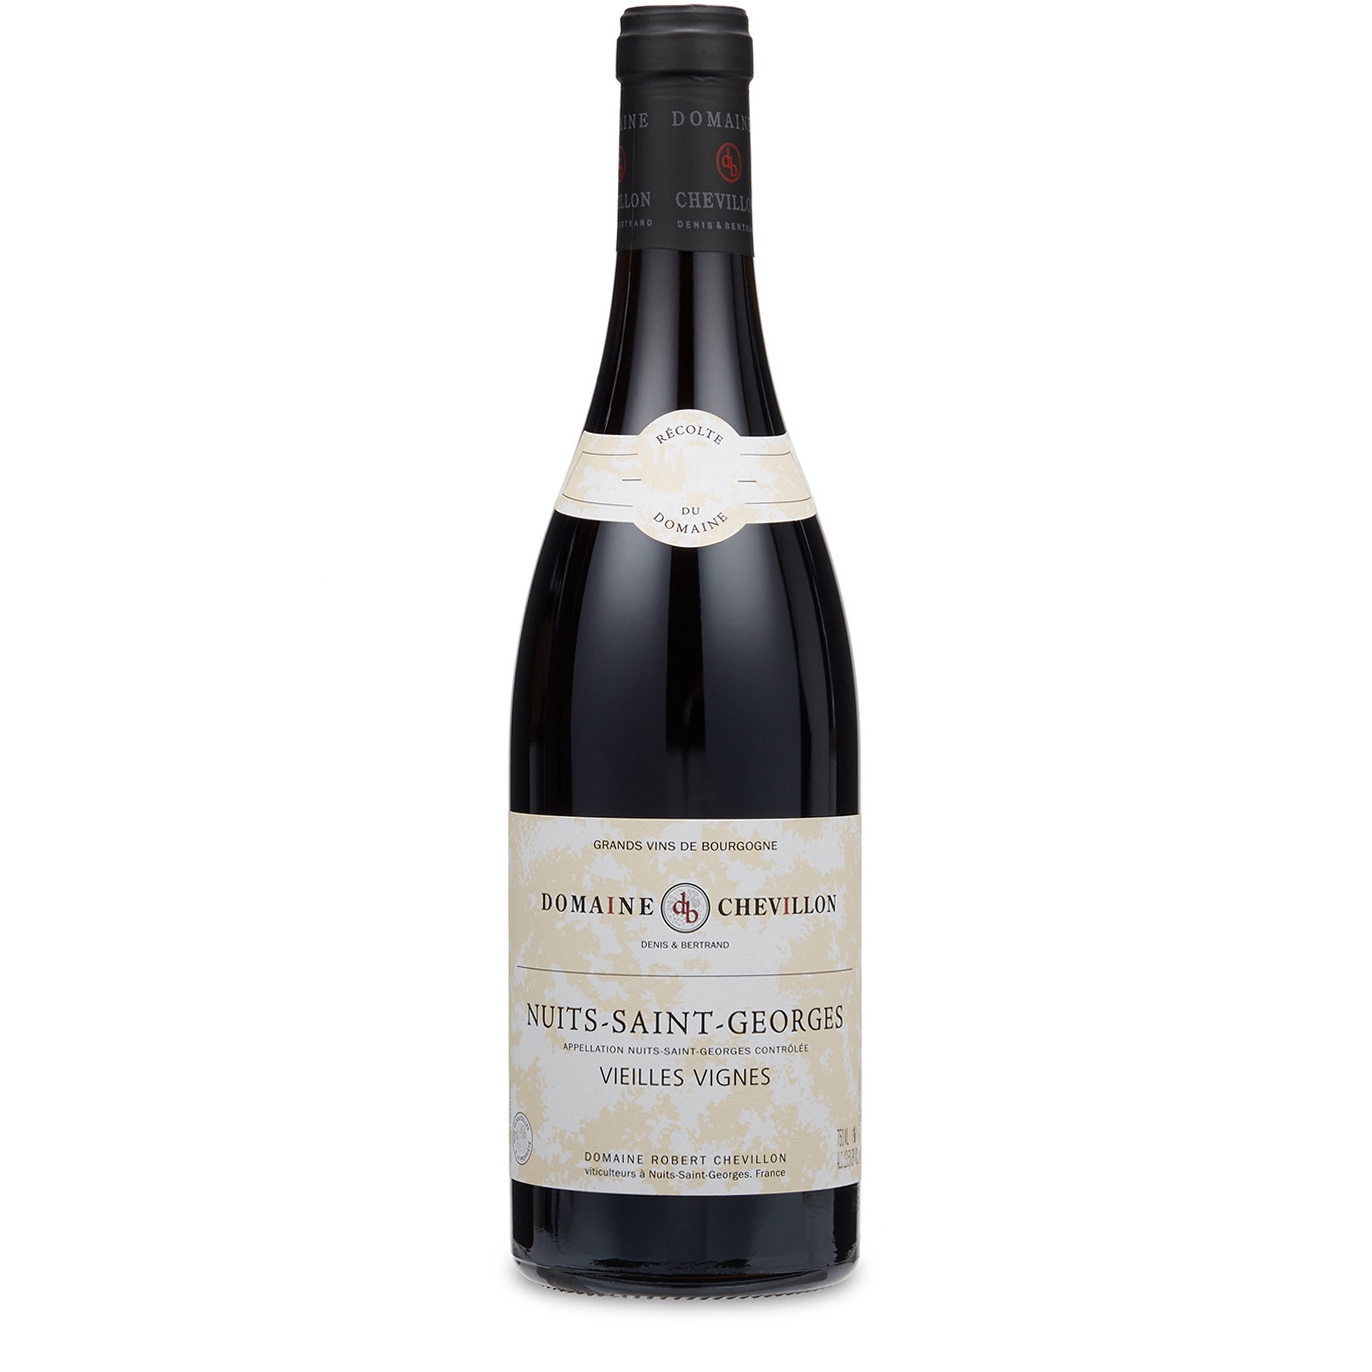 Domaine Robert Chevillon Nuits-Saint-Georges Vieilles Vignes 2017 Red Wine